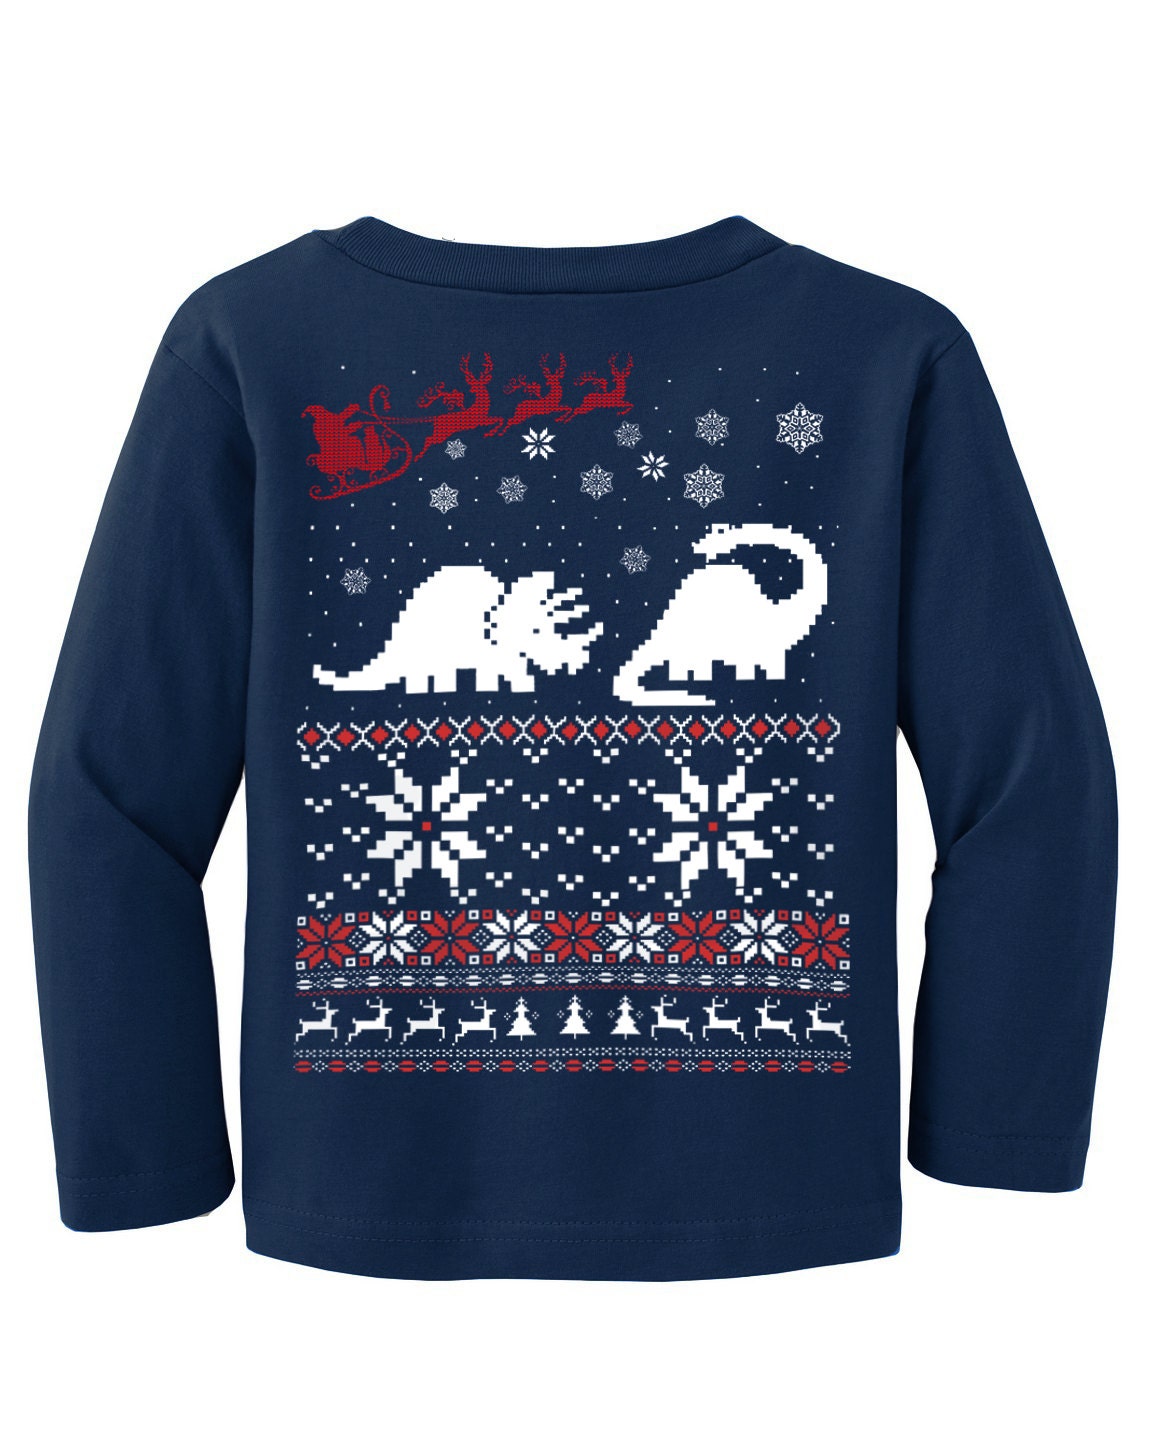 Ugly Christmas sweater Dinosaur t shirt and Santa Claus